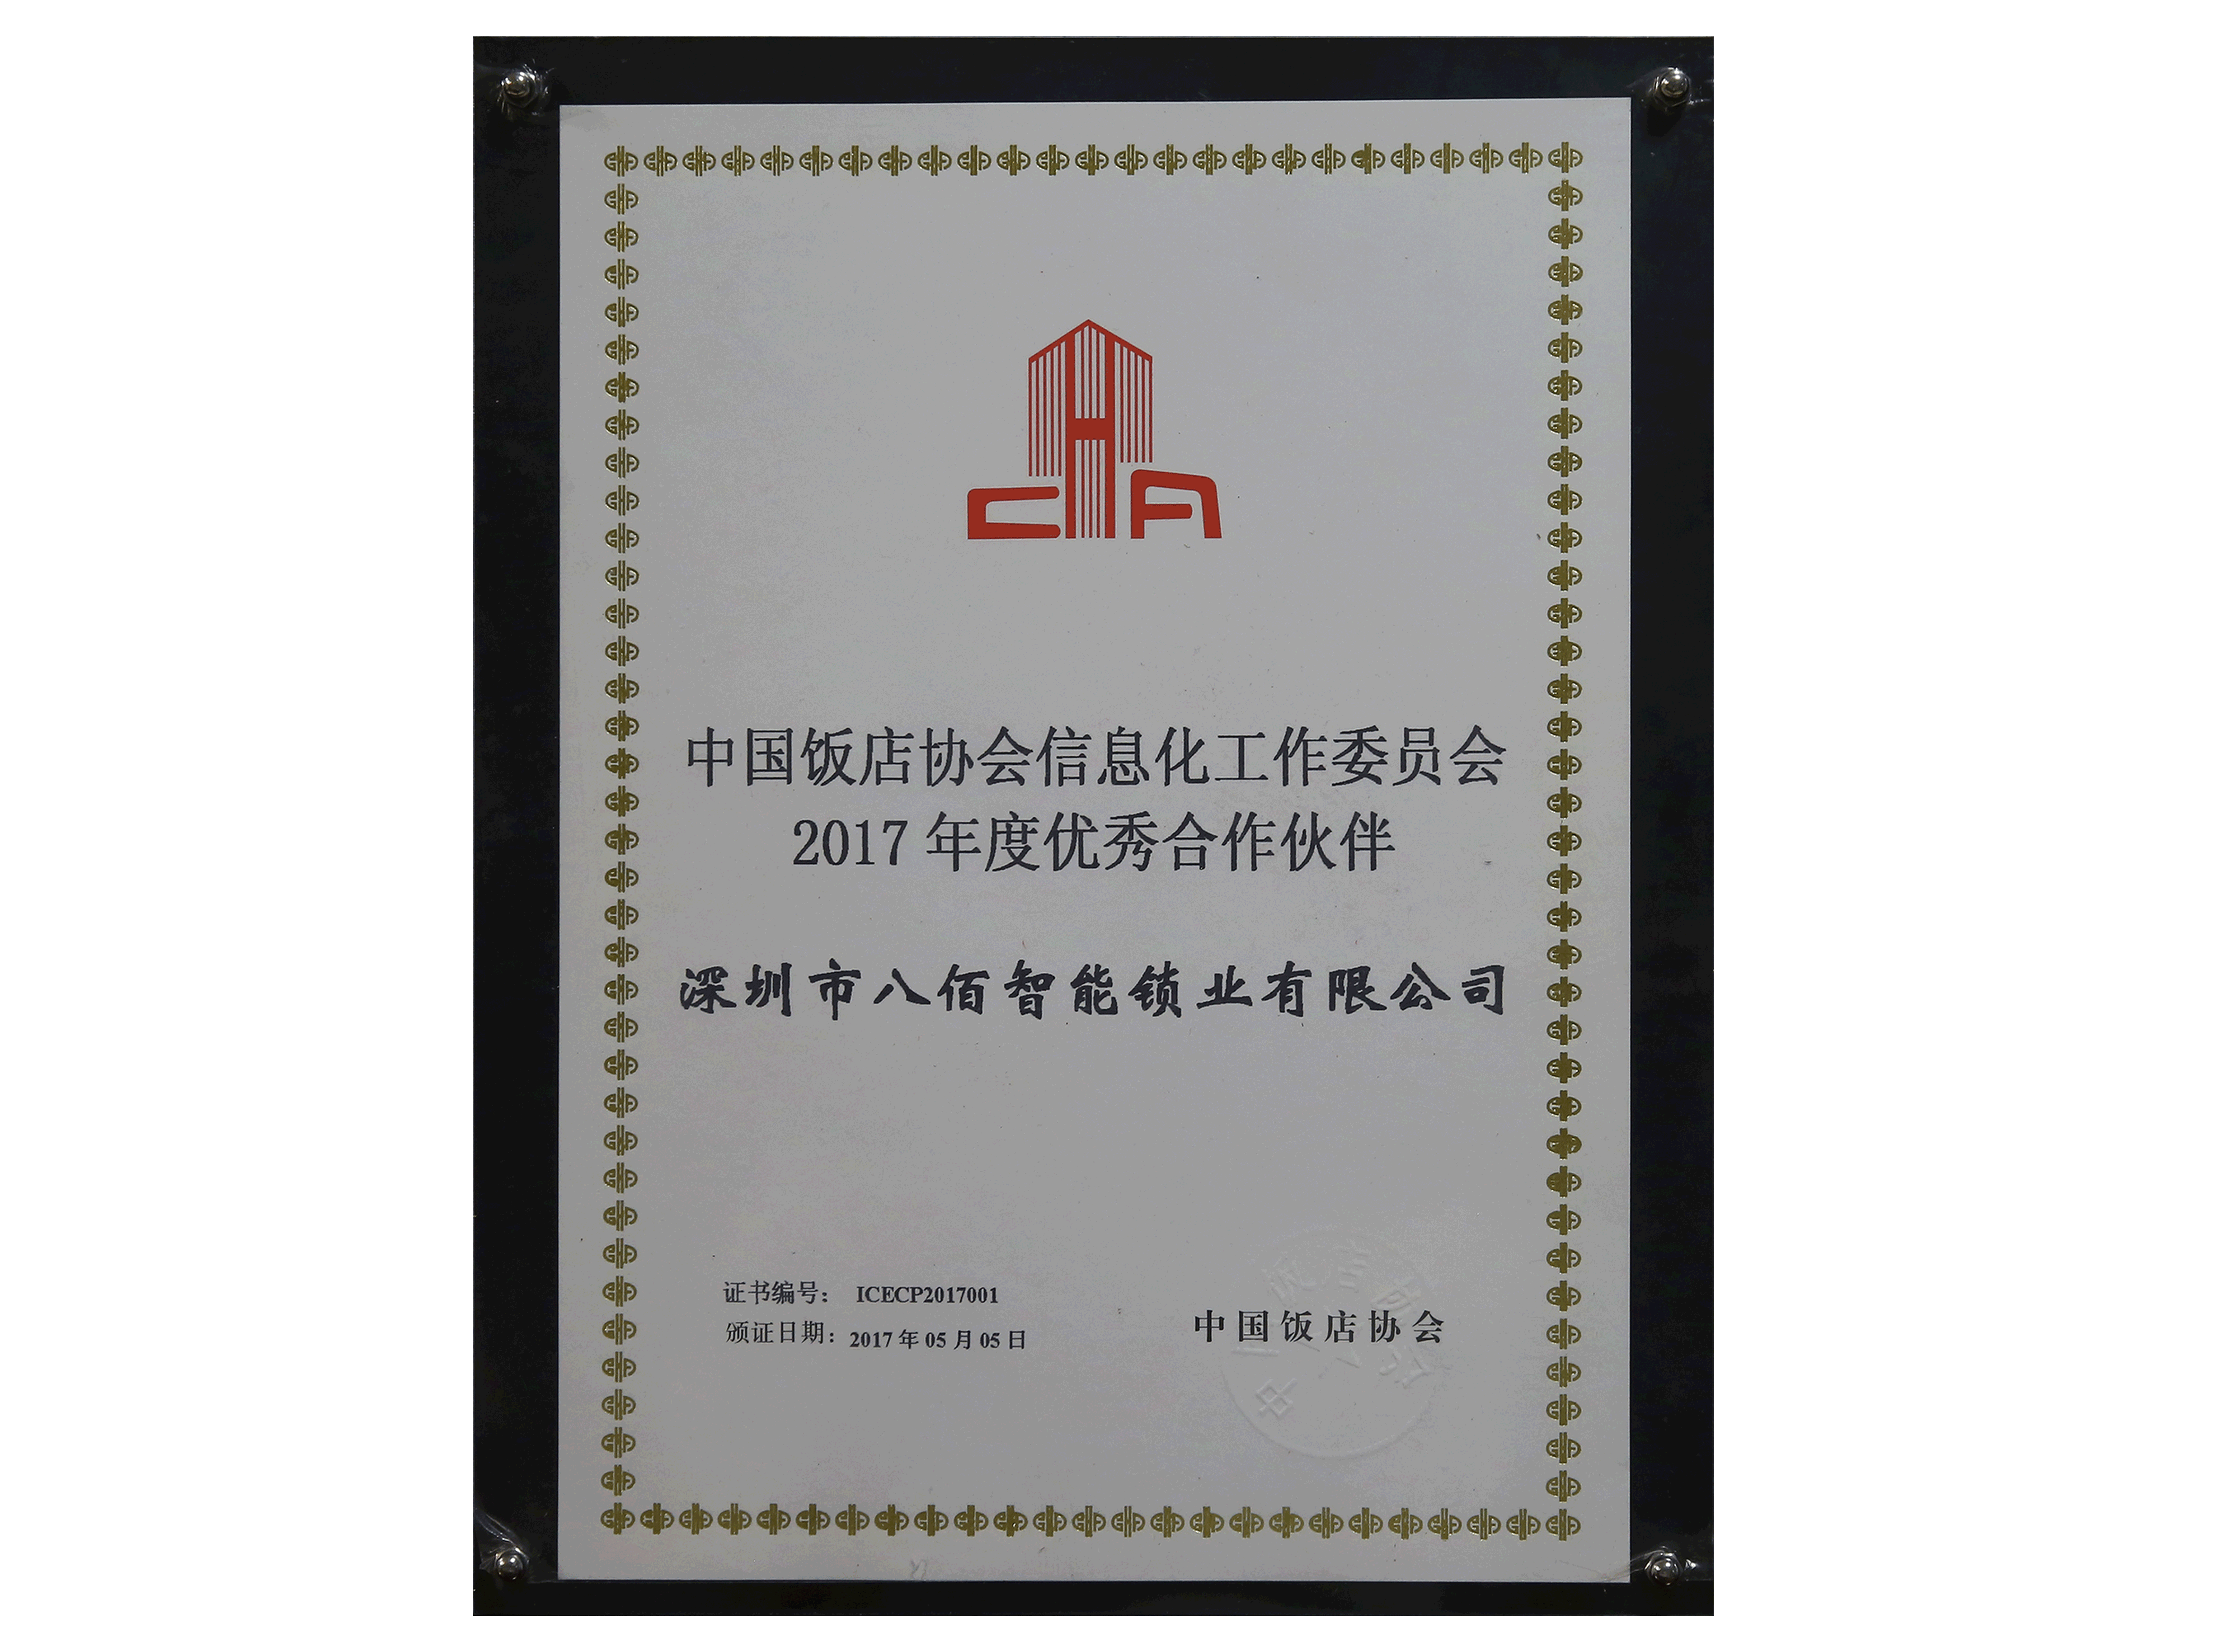 中国饭店协会信息化工作委员会2017年度优秀合作伙伴